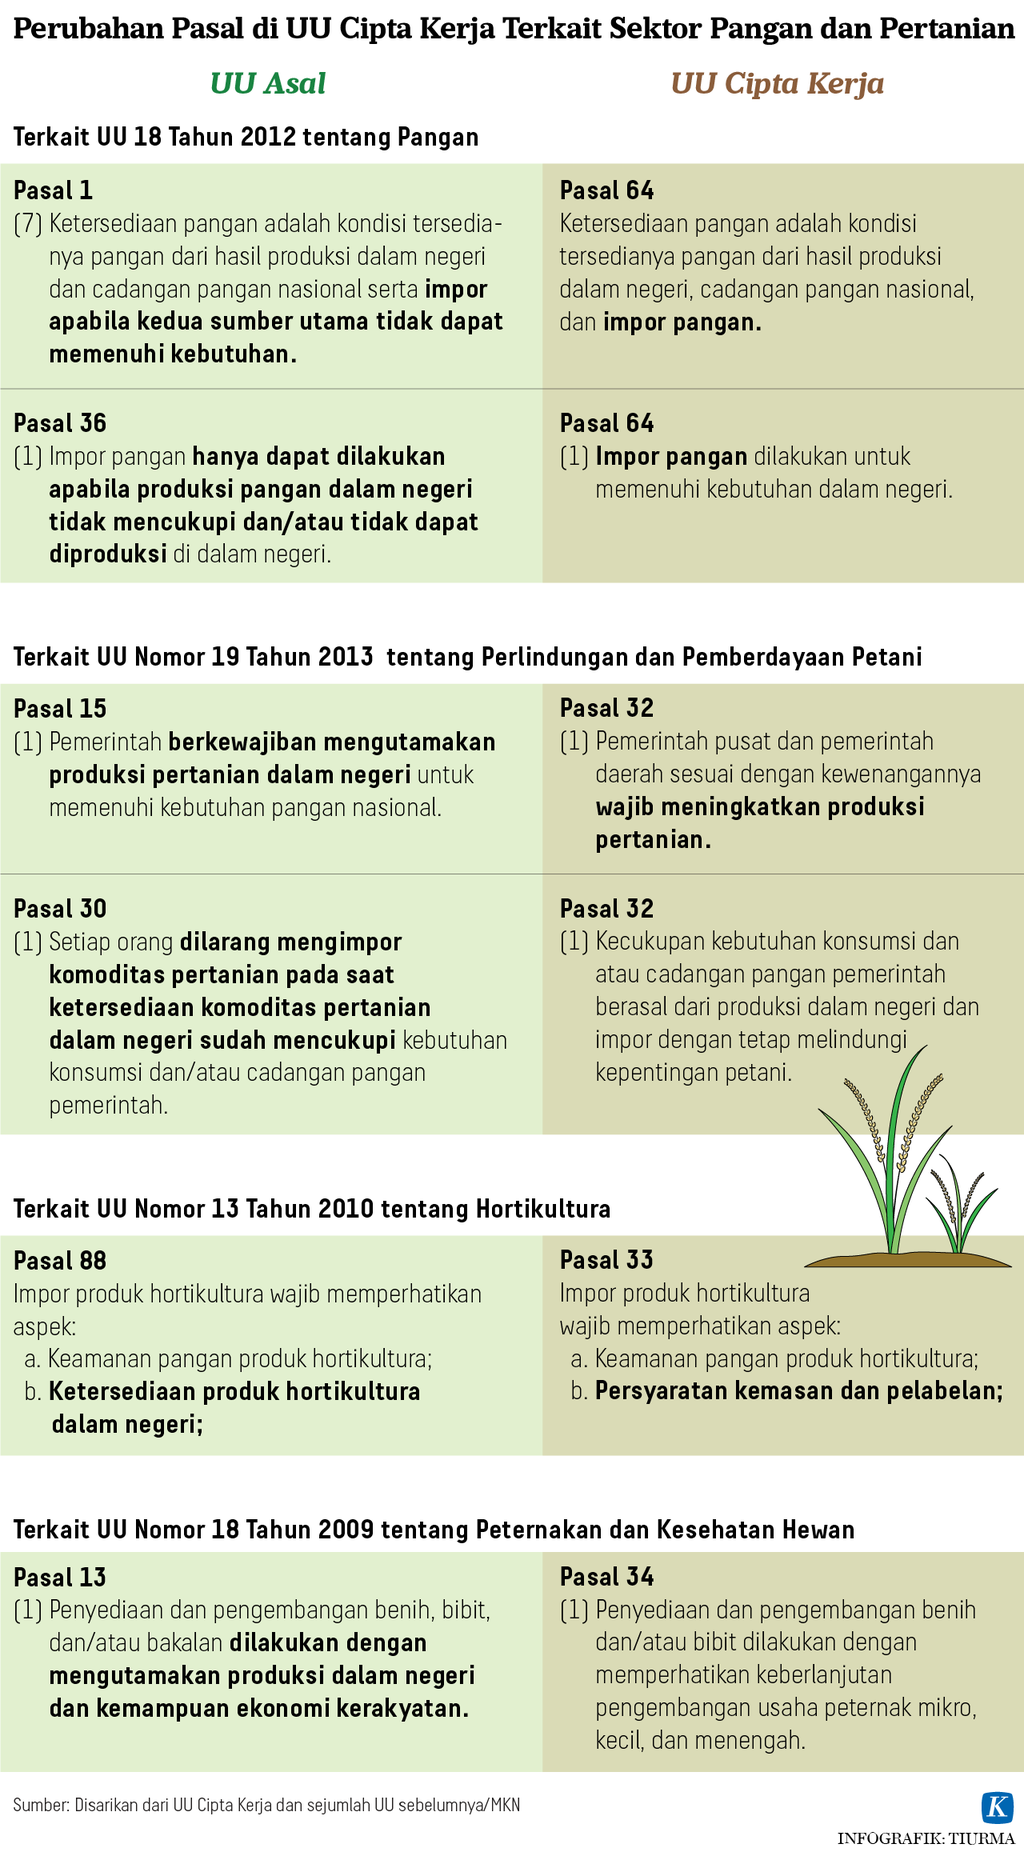 Infografik Perubahan Pasal di UU Cipta Kerja Terkait Sektor Pangan dan Pertanian